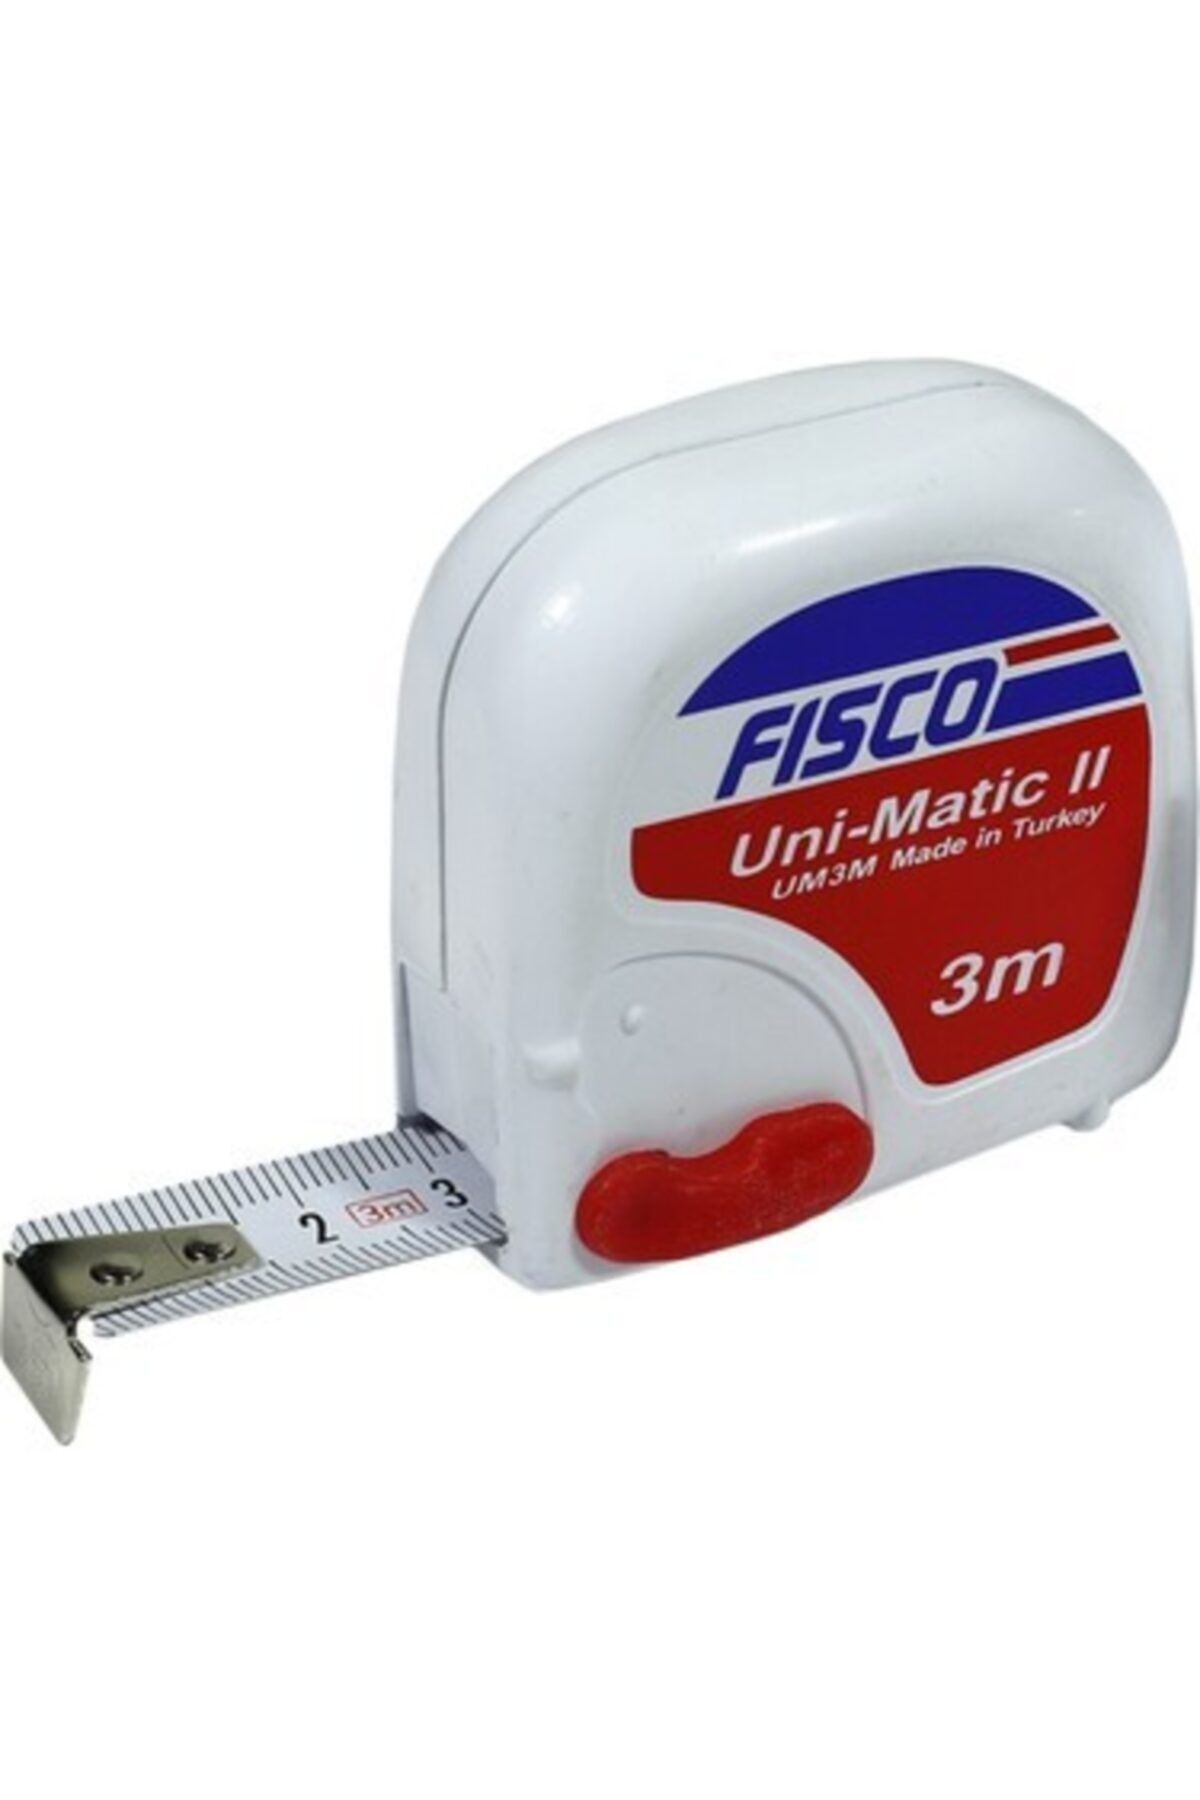 Fisco Şerit Metre Unımatıc Iı 3 Metre 16 Mm